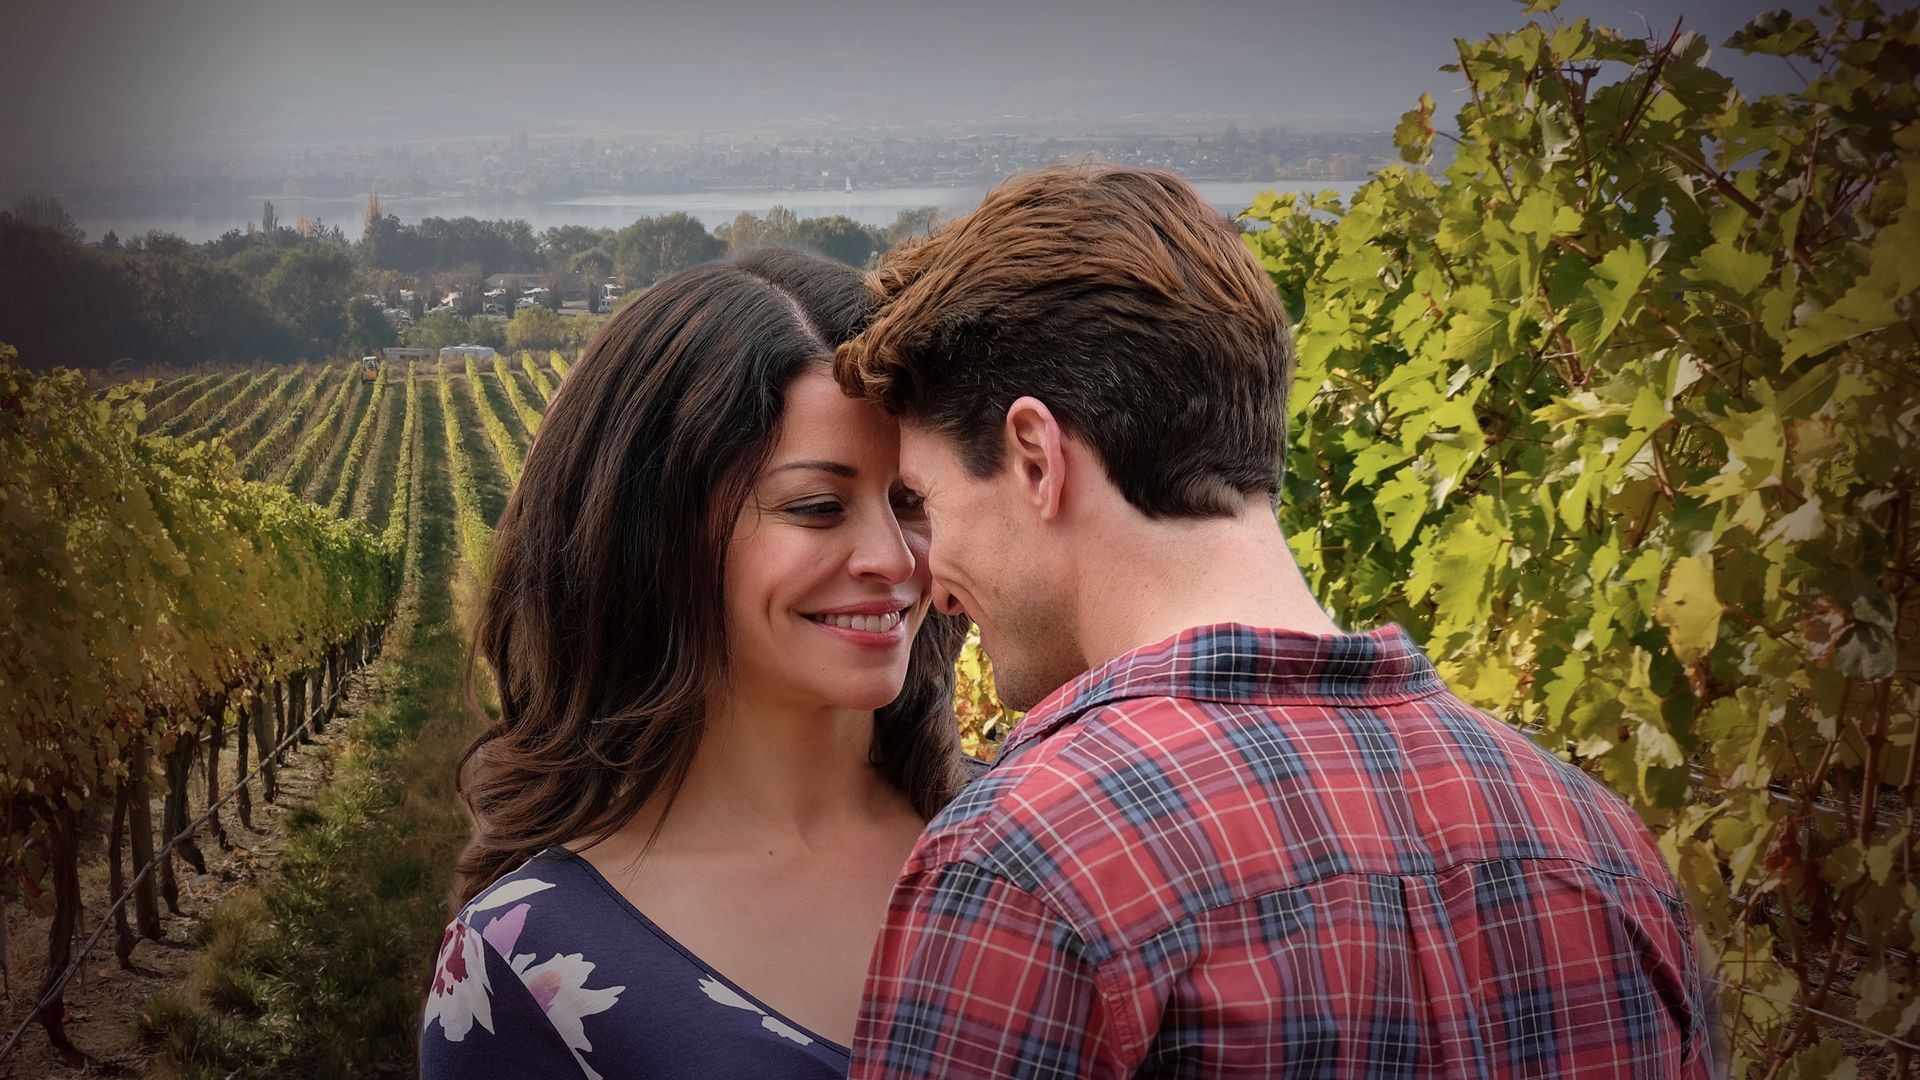 Love in the Vineyard Backdrop